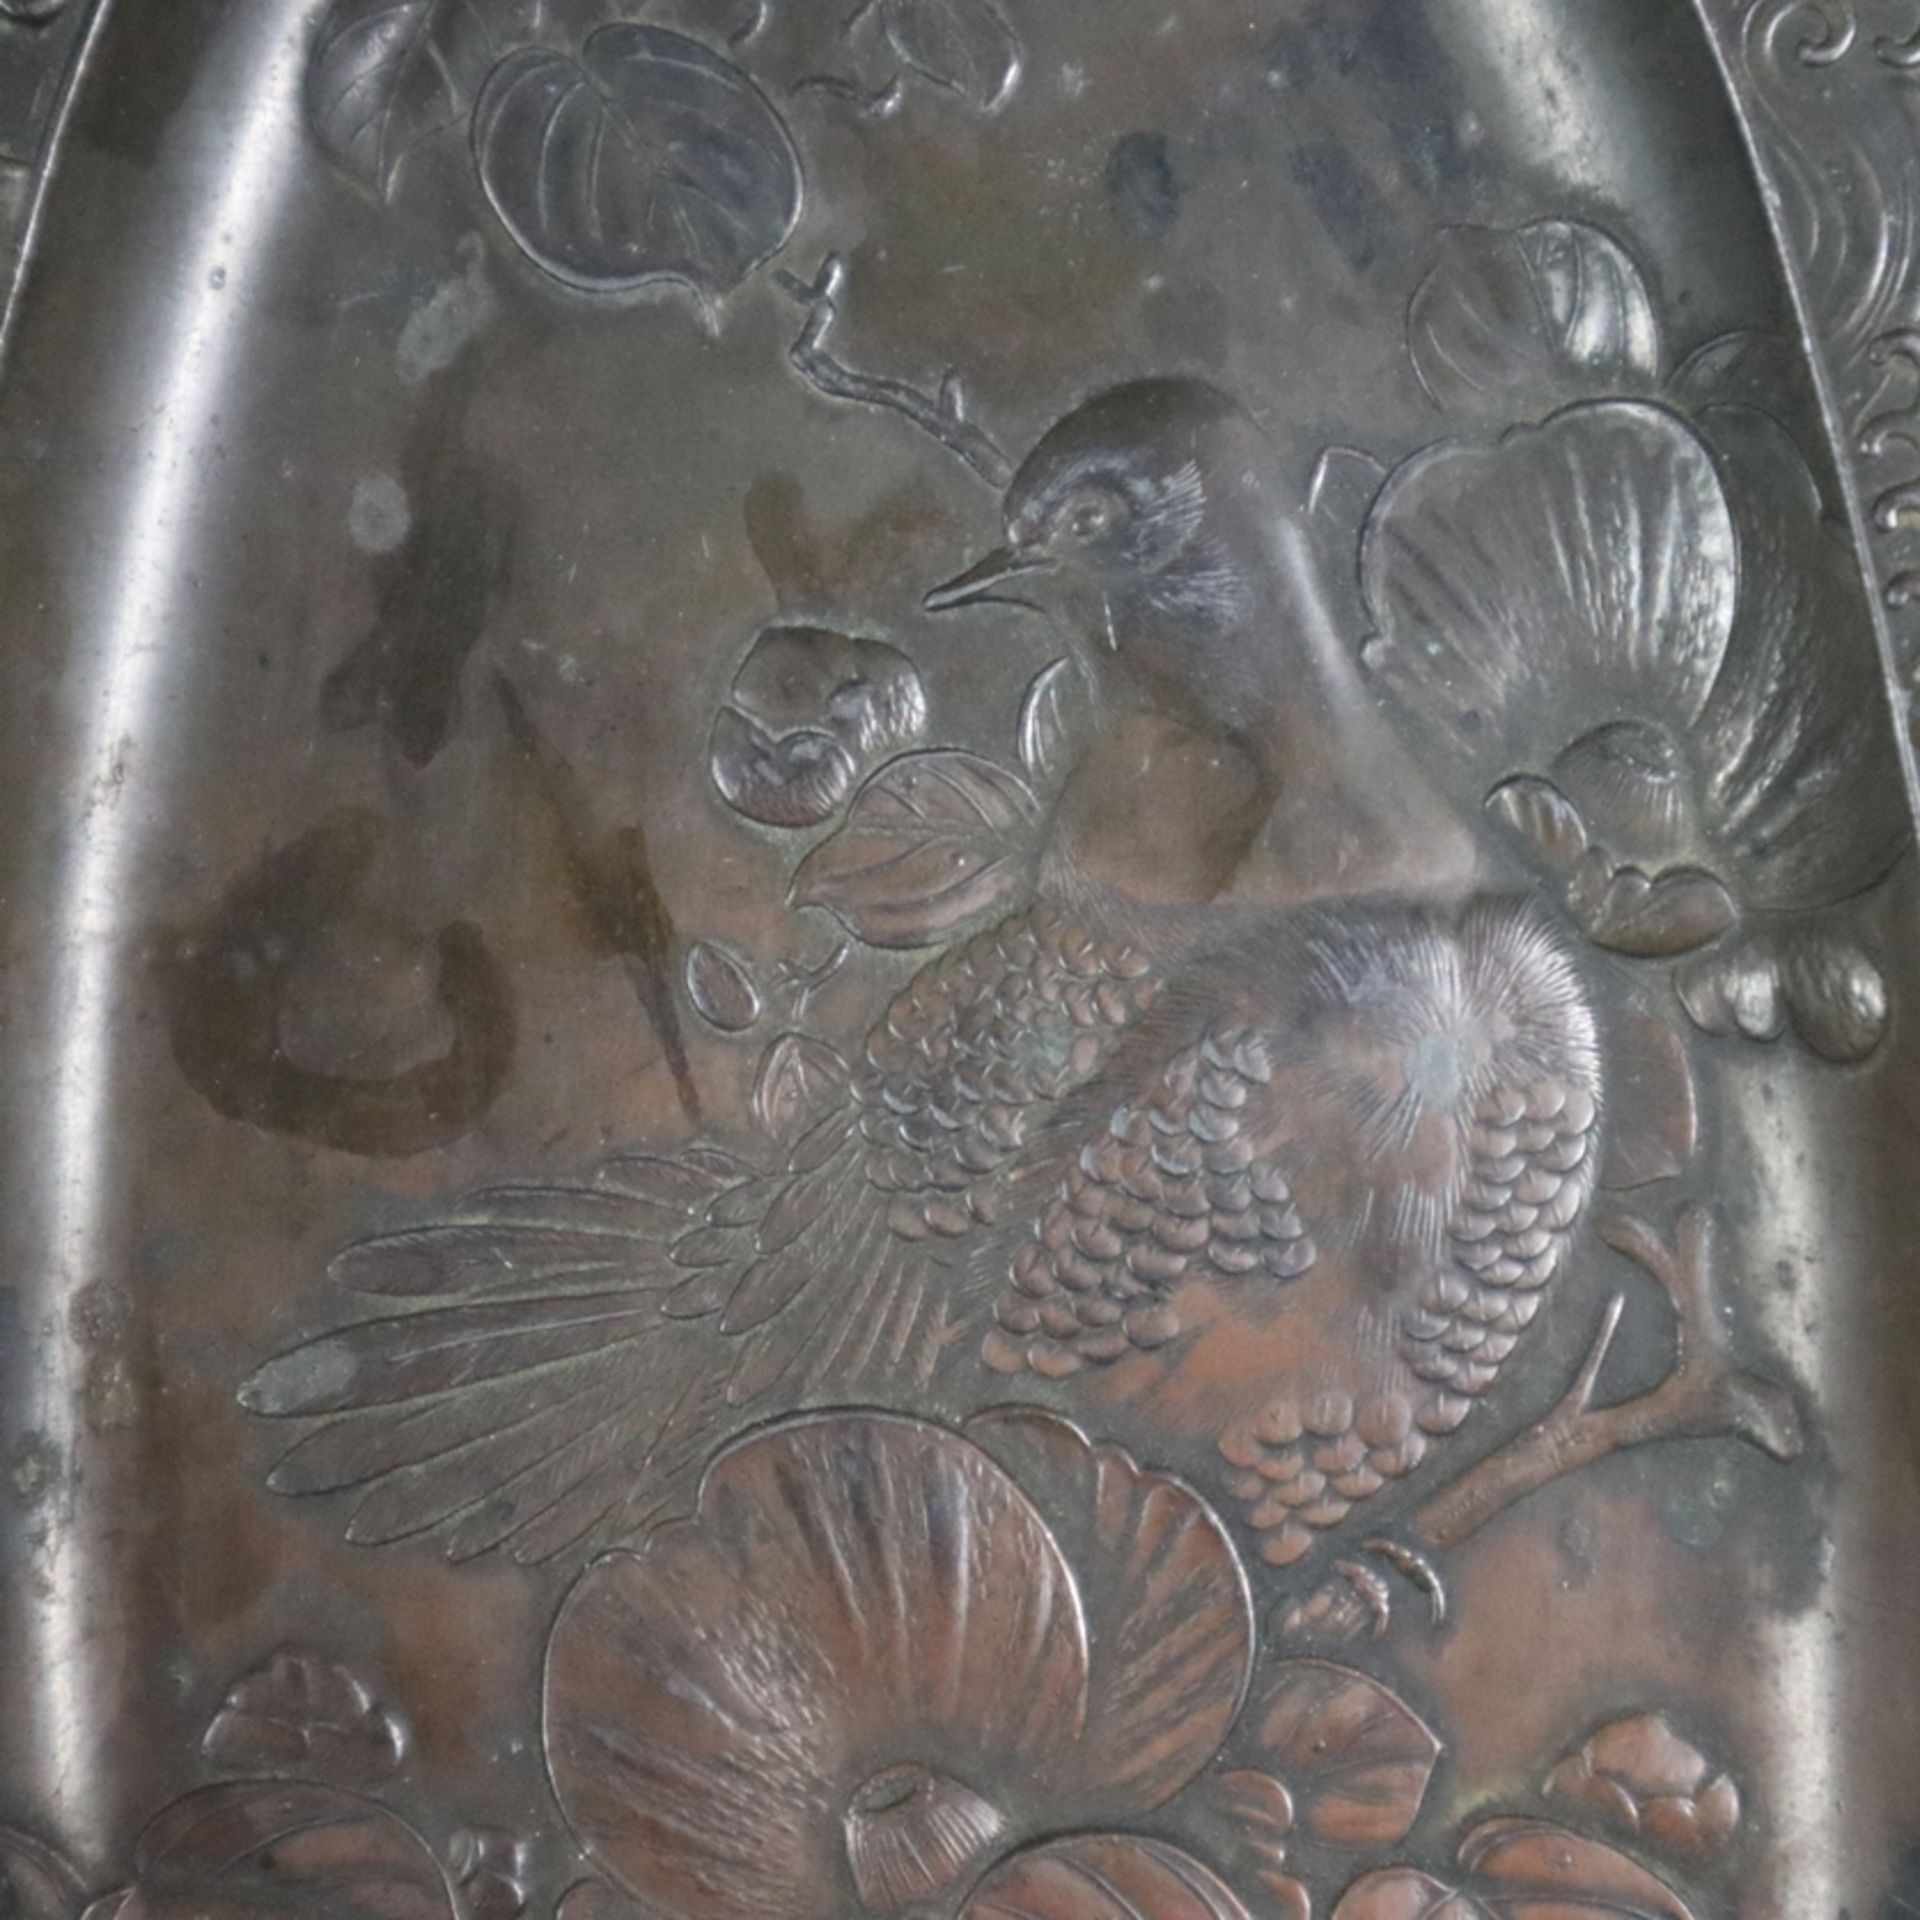 Zwei Pinselablagen - Japan, Metall, bronziert, längliche Form mit Reliefdekor: Vogelmotive auf blüh - Bild 5 aus 8